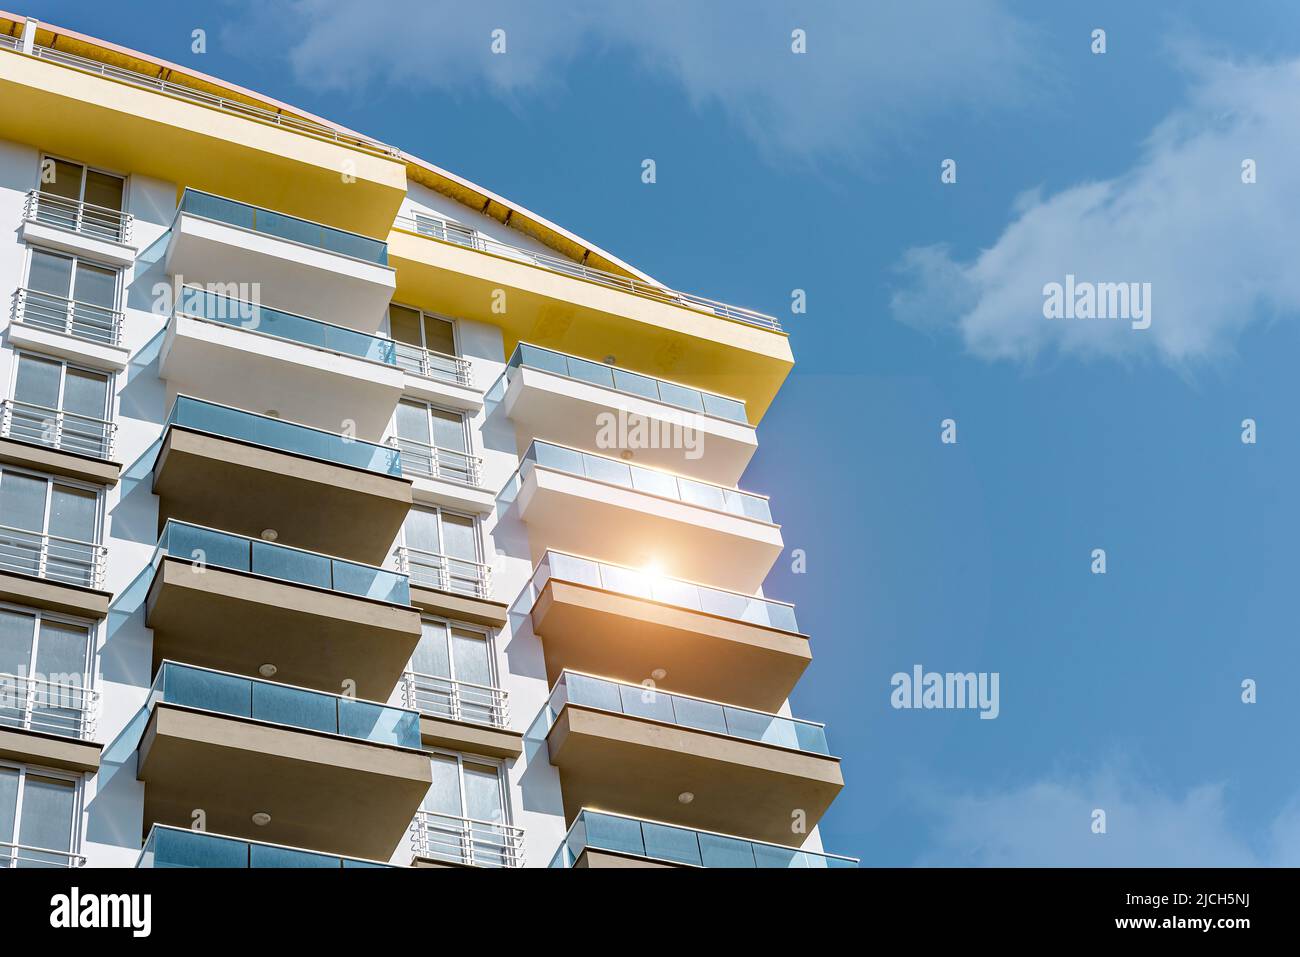 Effets lumineux des rayons du soleil sur les bâtiments de la ville. Fragment d'un appartement résidentiel moderne avec balcons. Architecture turque. Banque D'Images